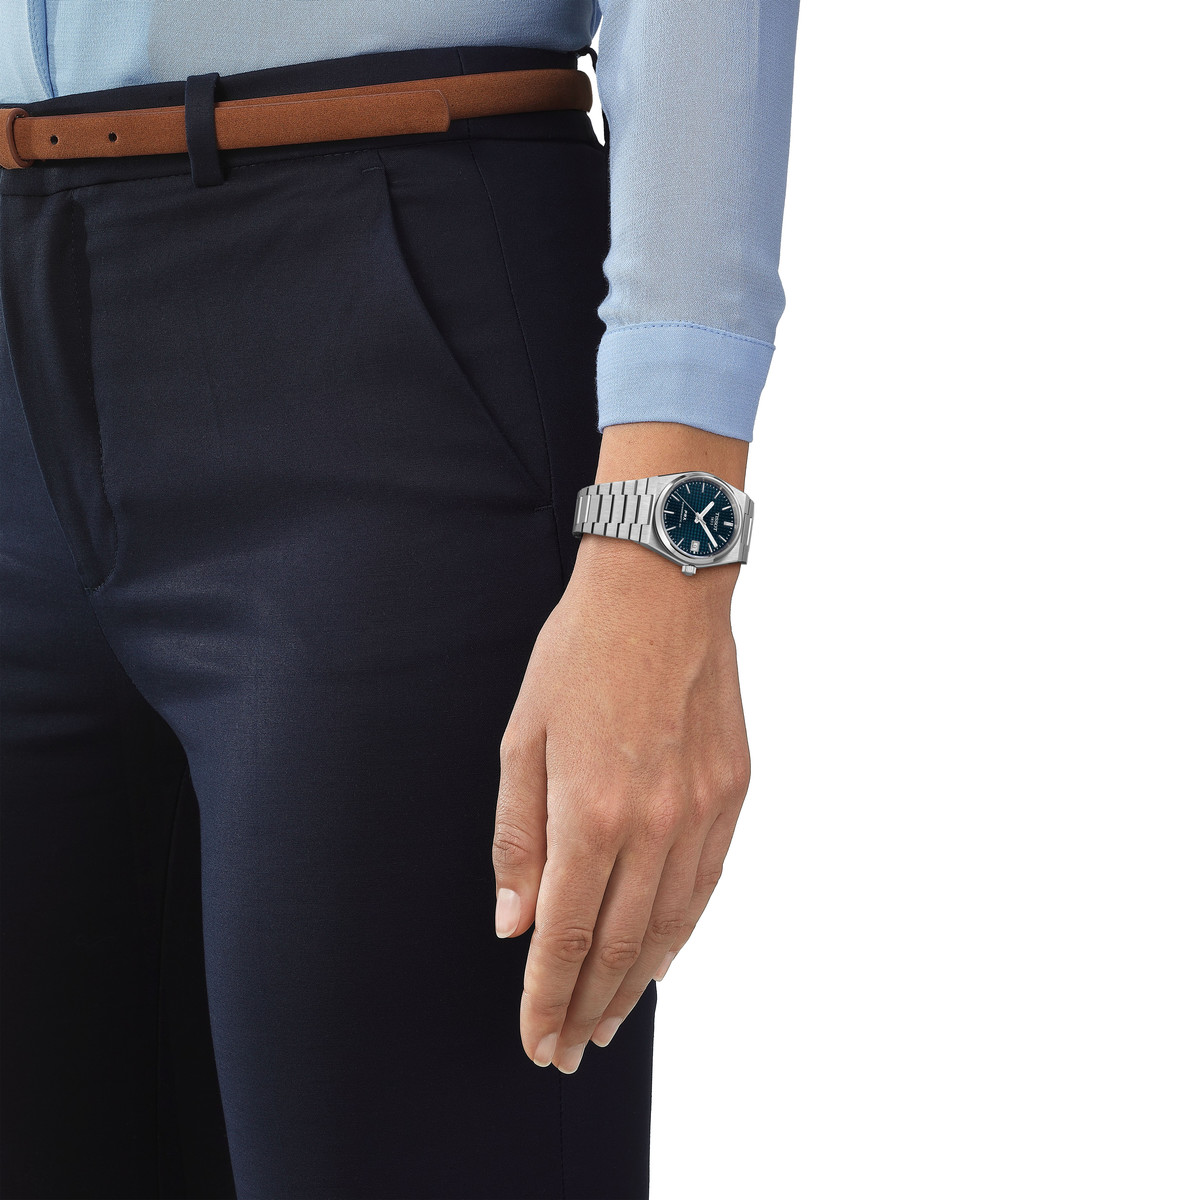 Montre TISSOT T-classic homme automatique, bracelet acier inoxydable - vue porté 1